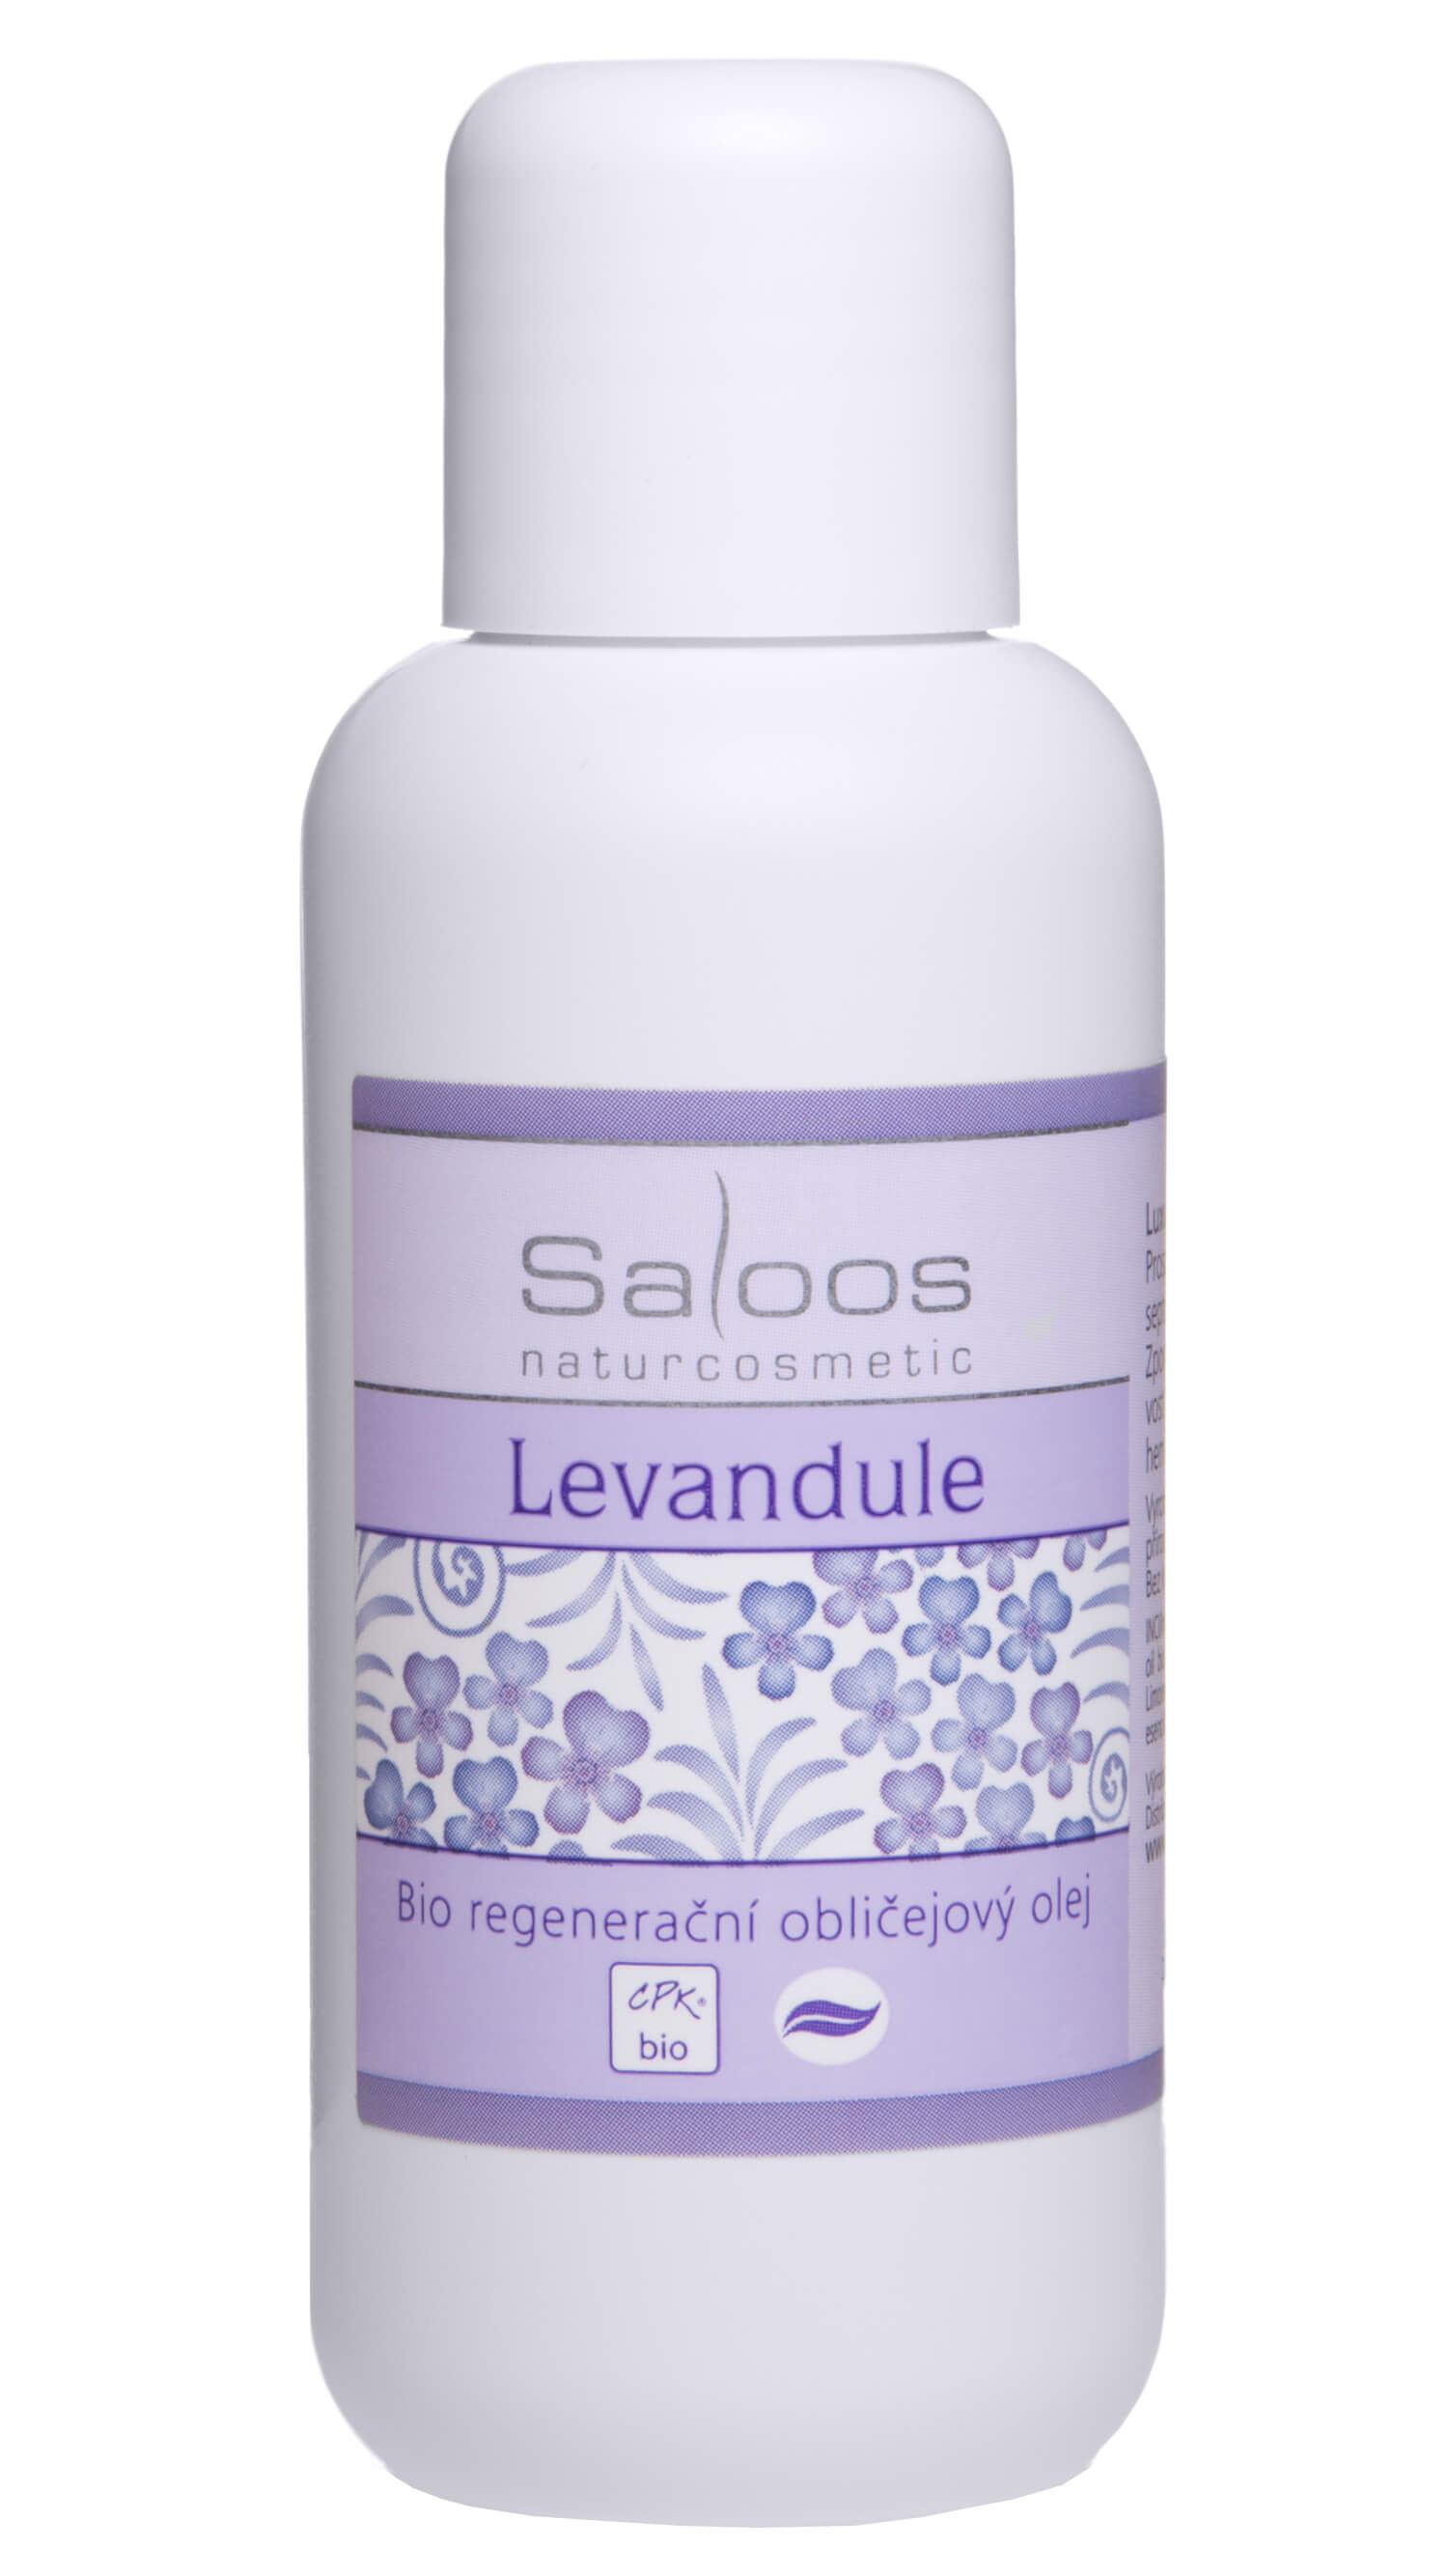 Zobrazit detail výrobku Saloos Bio regenerační obličejový olej - Levandule 100 ml + 2 měsíce na vrácení zboží